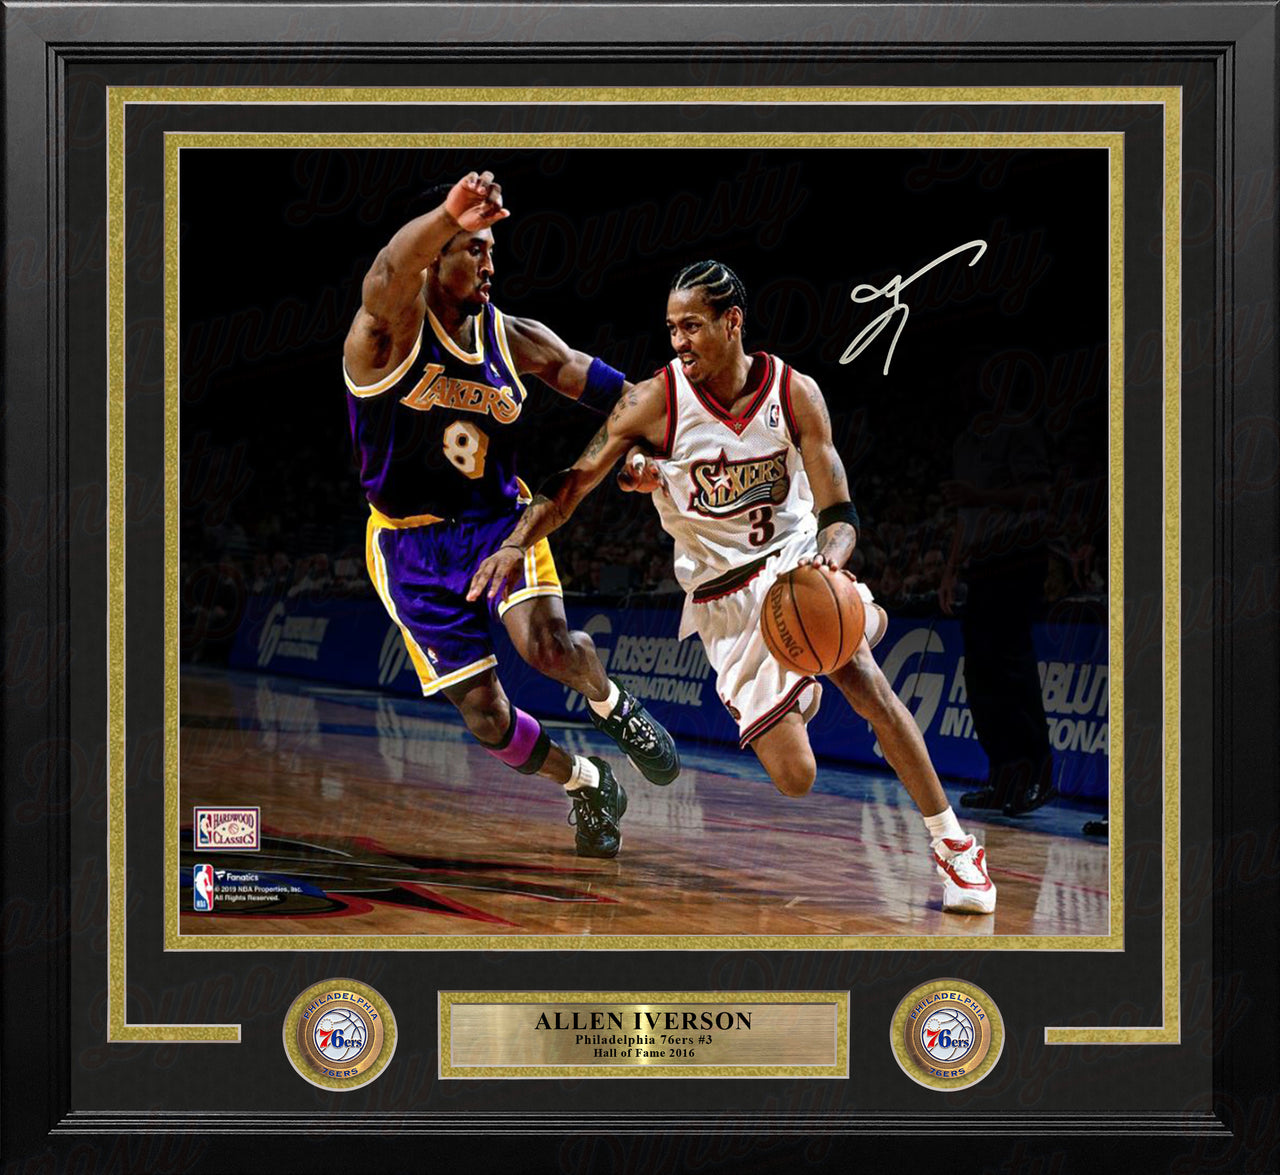 ✺Framed✺ PHILADELPHIA 76ERS NBA Basketball Poster ALLEN IVERSON - 62cm x